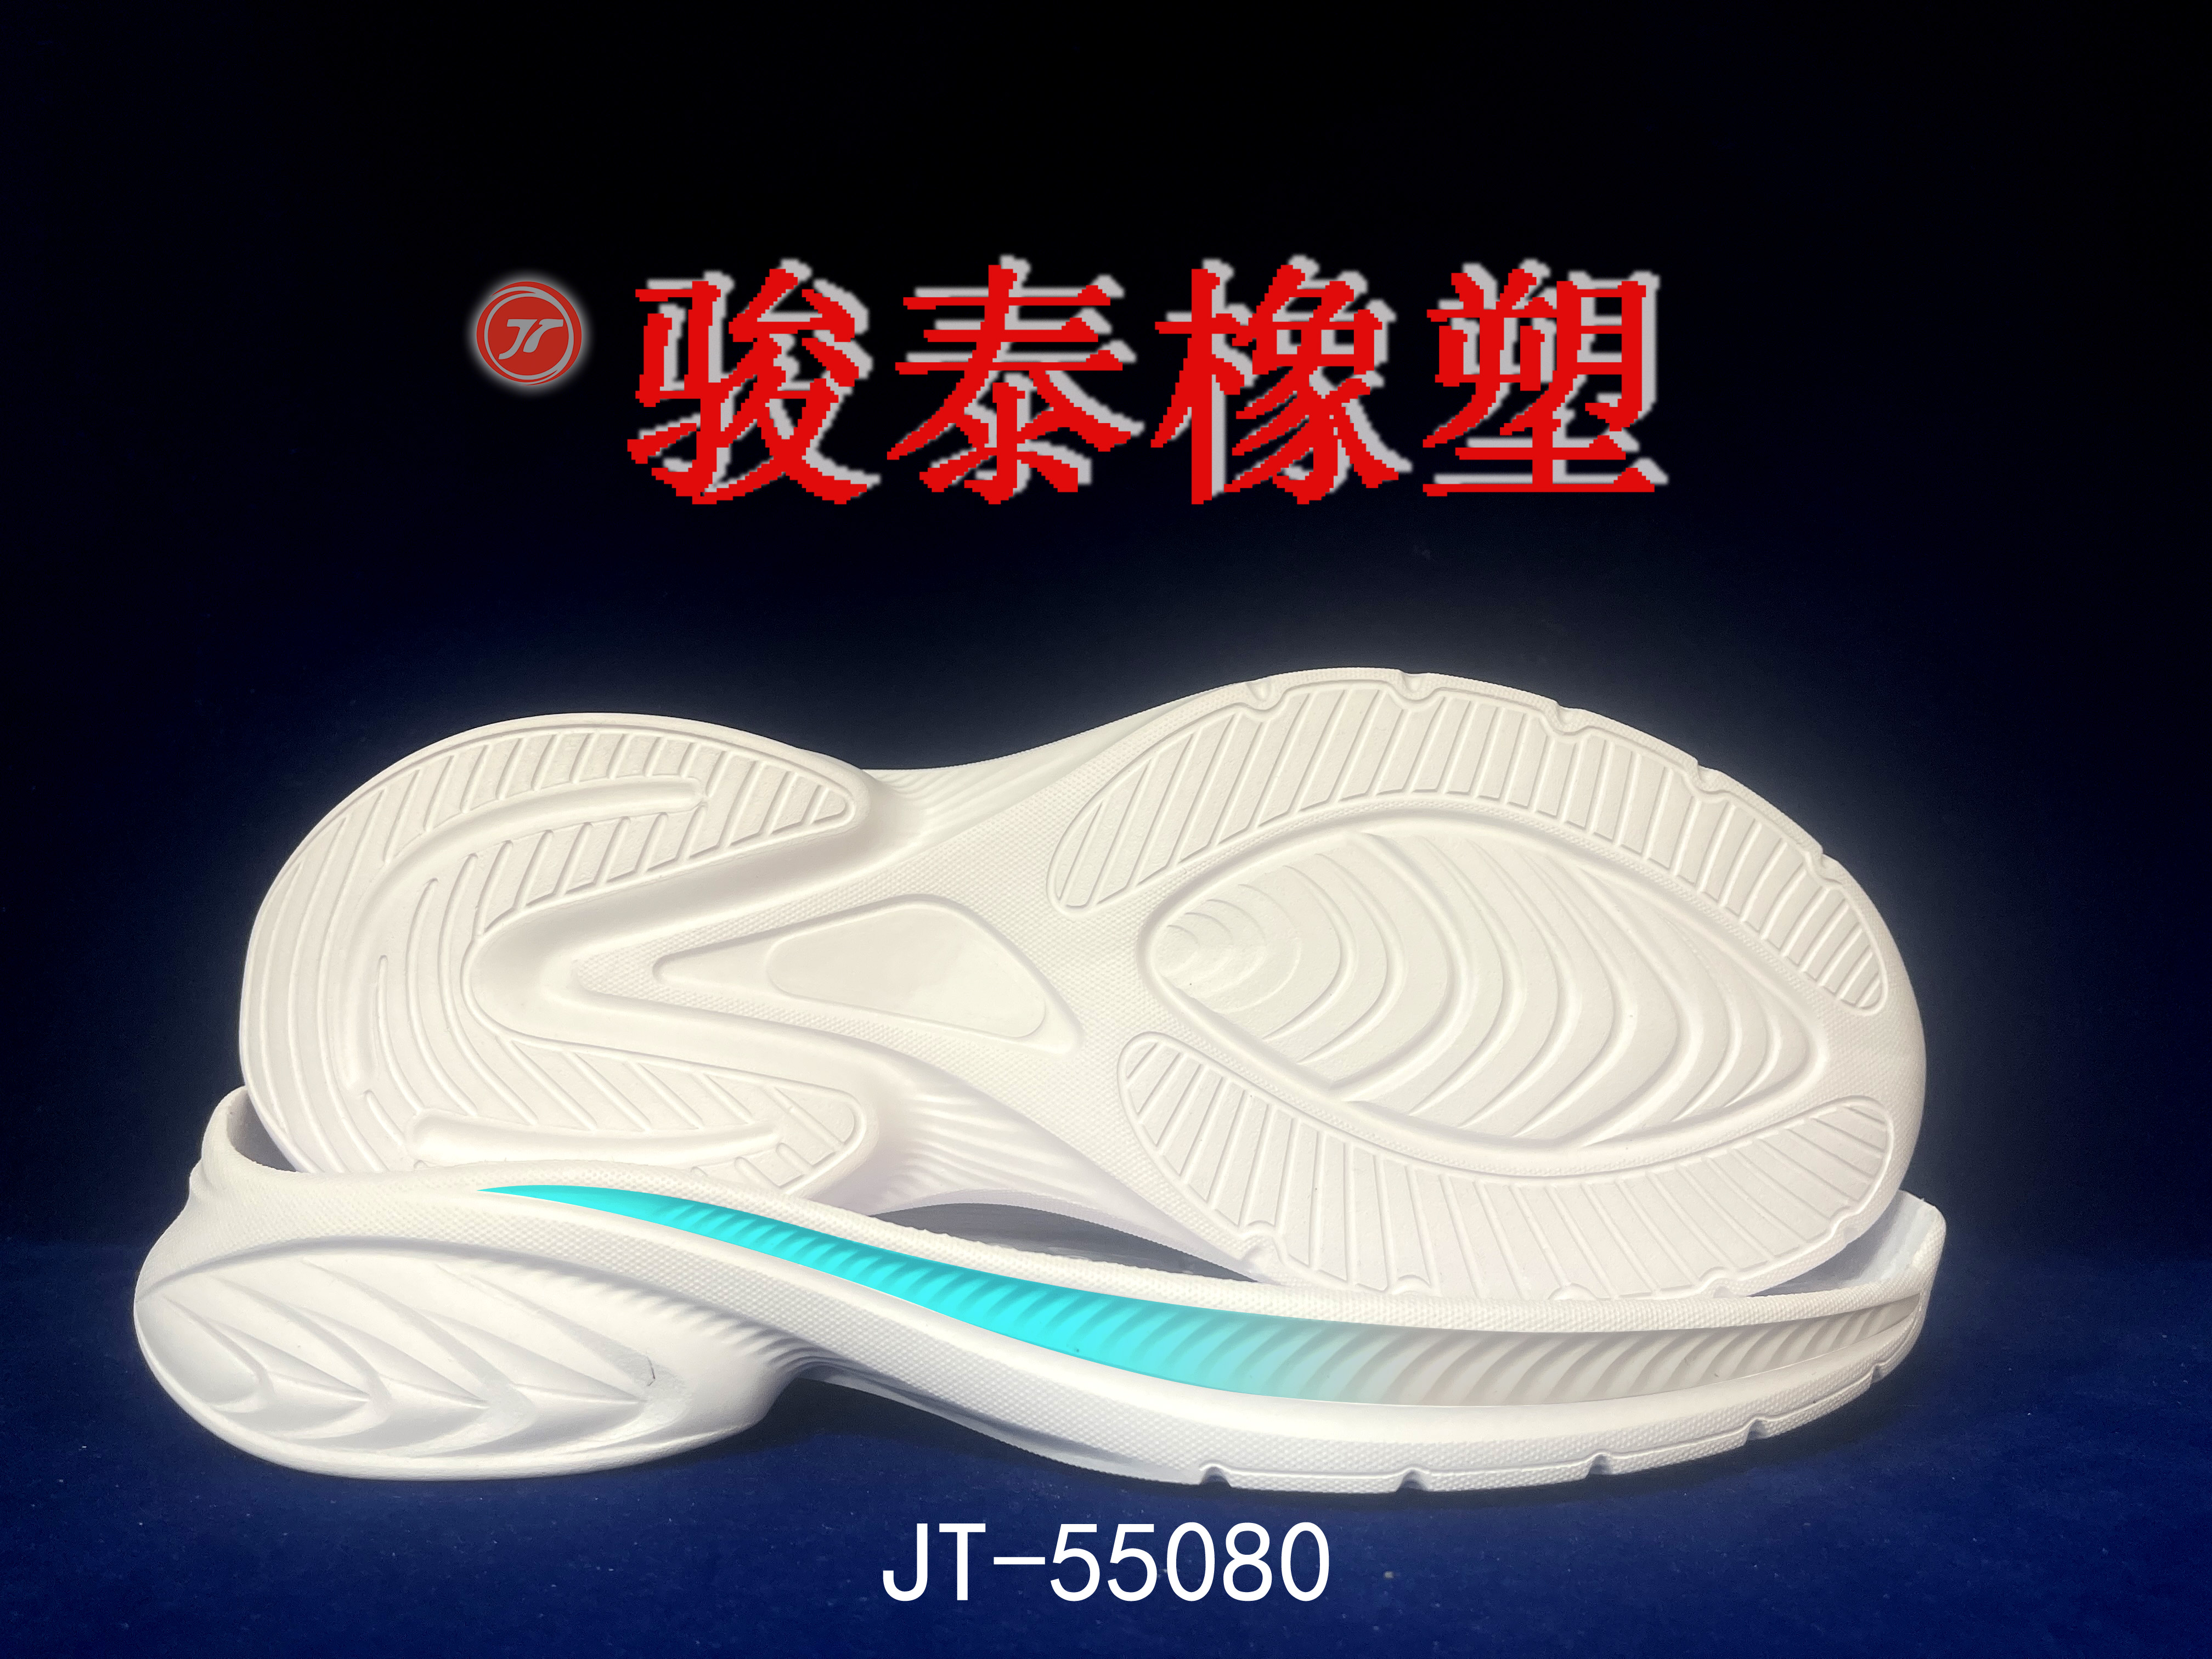 jt-55080